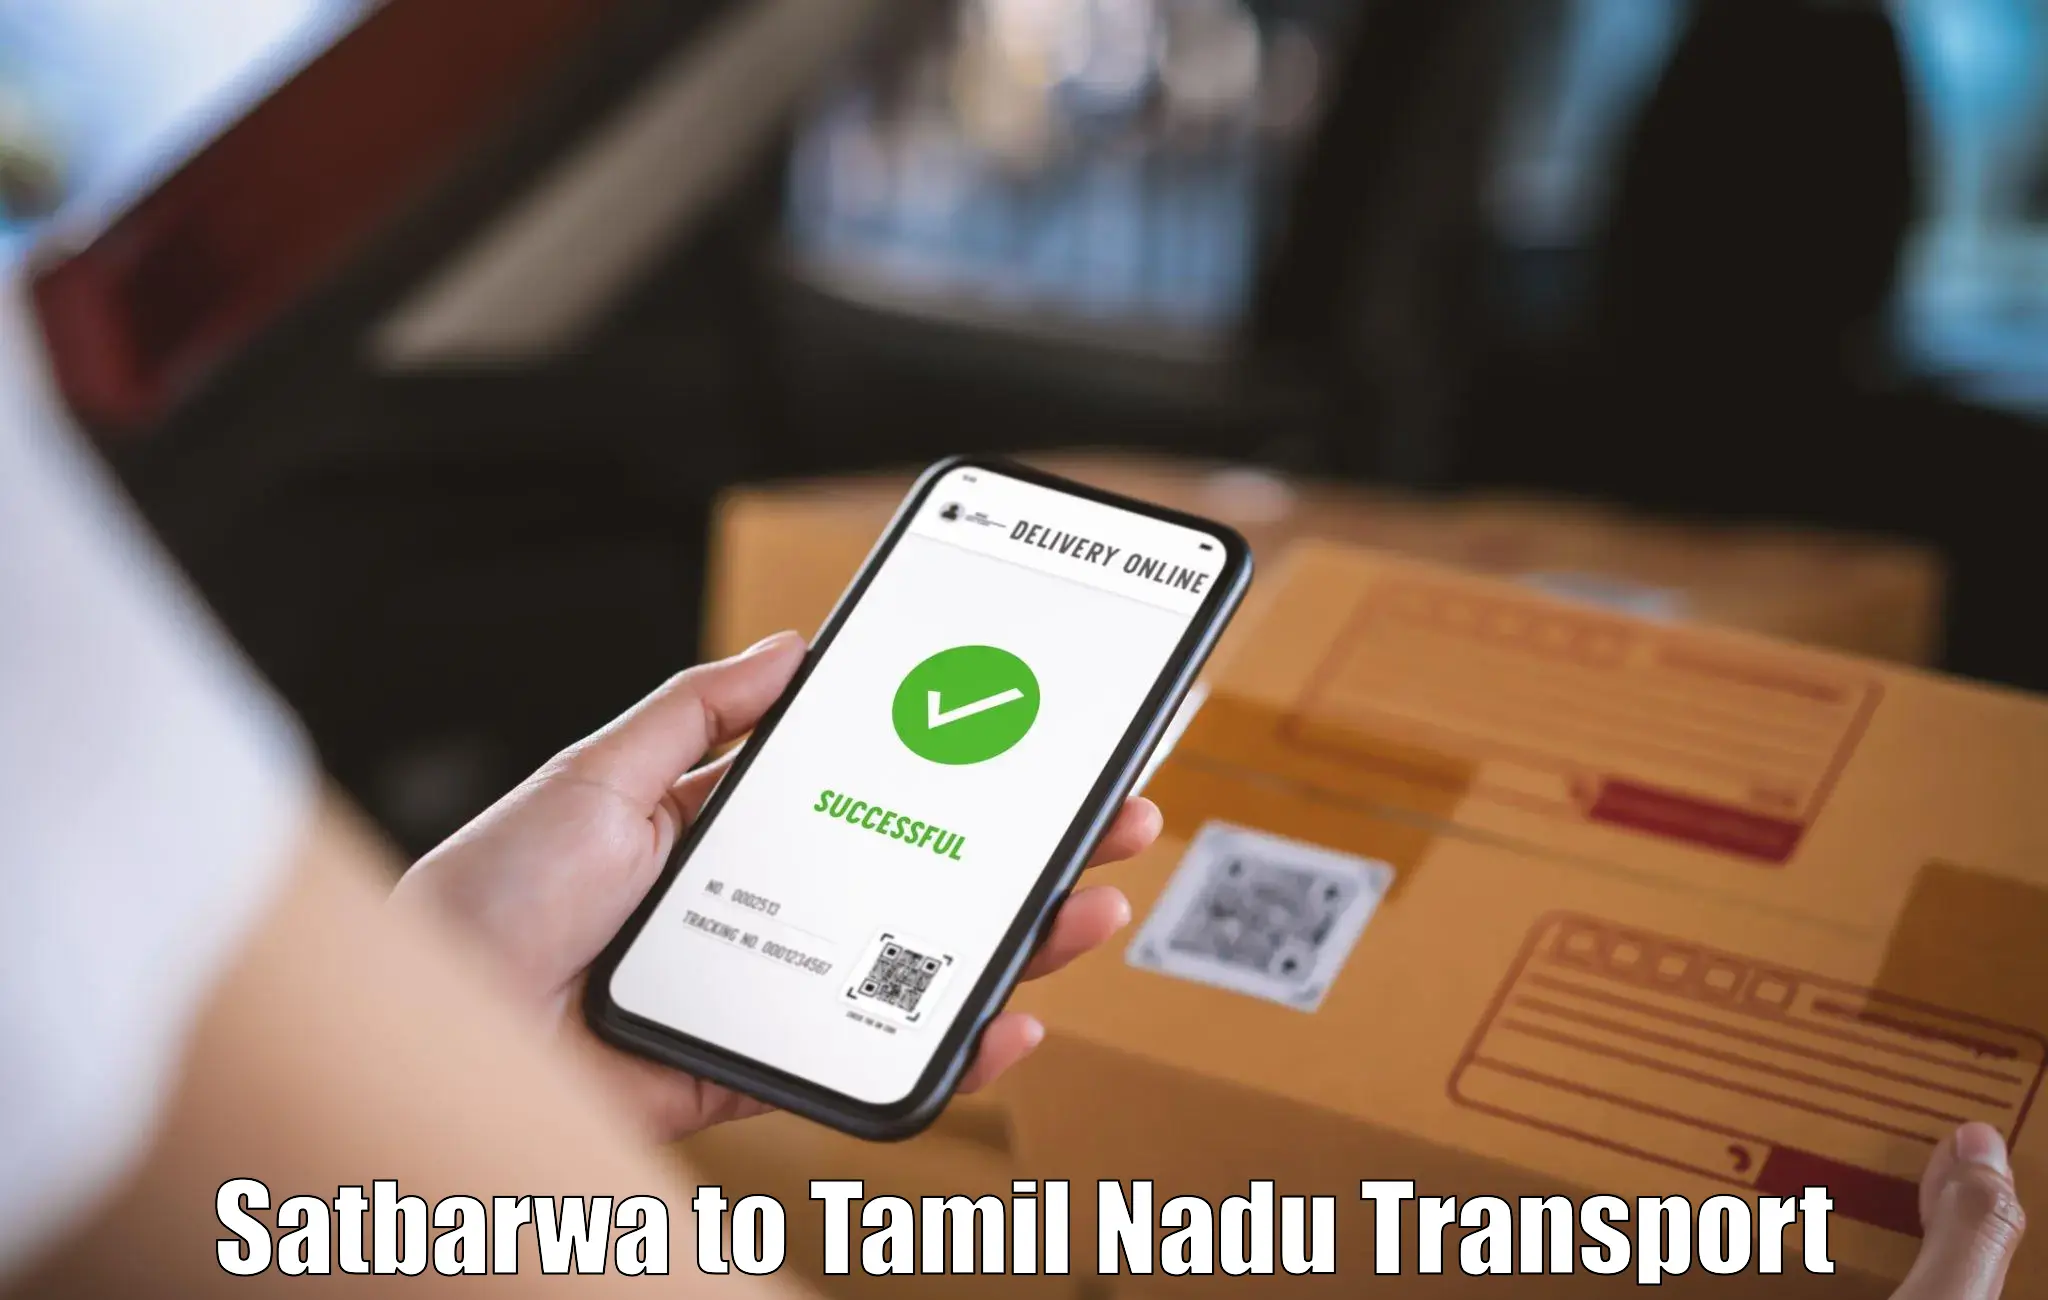 Material transport services Satbarwa to Namakkal